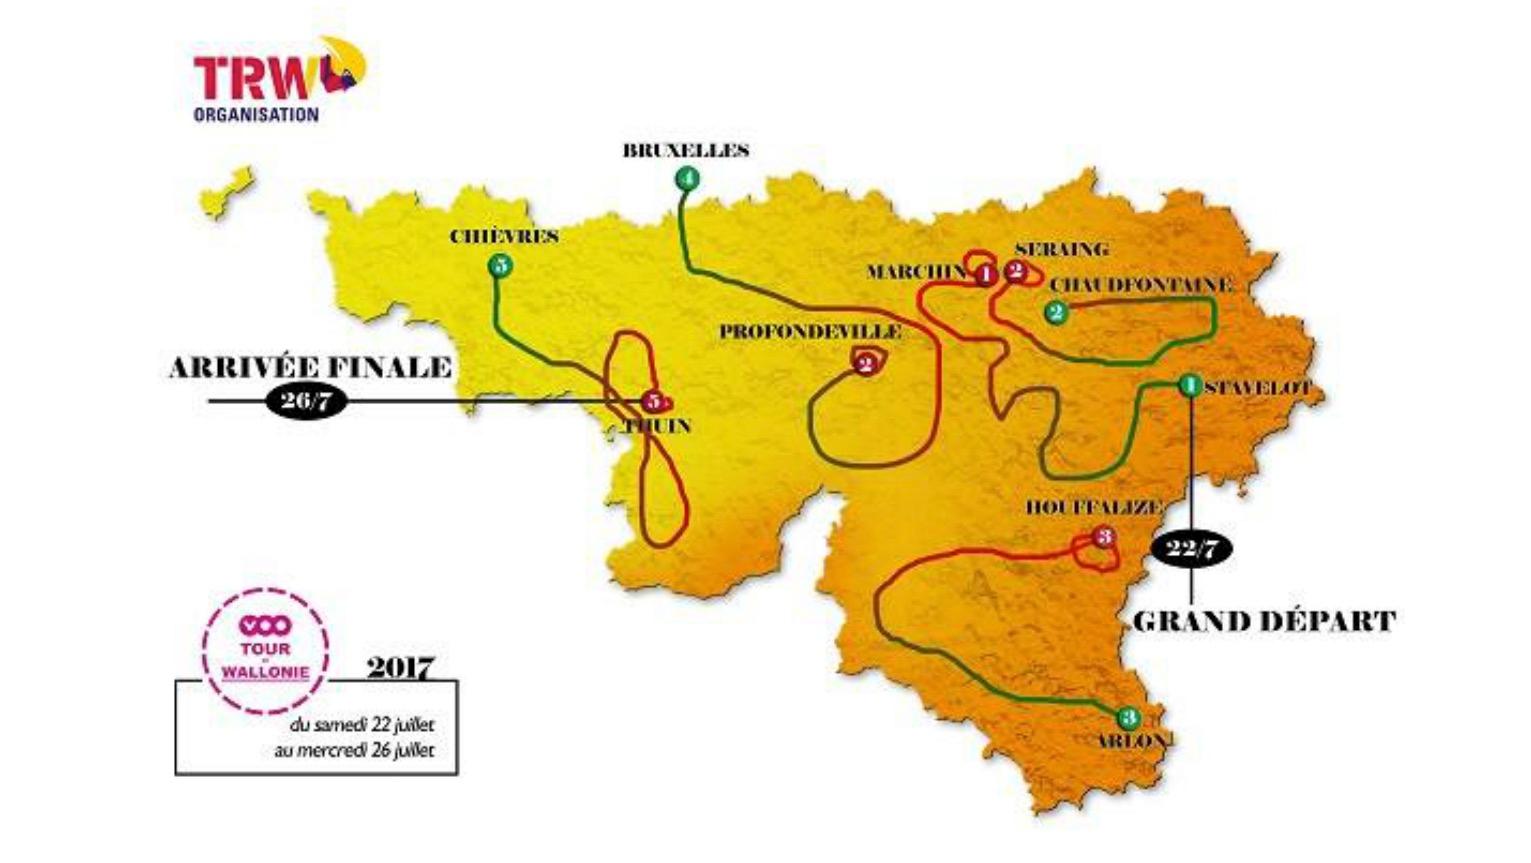 Le VOO Tour de Wallonie se terminera en Wallonie picarde